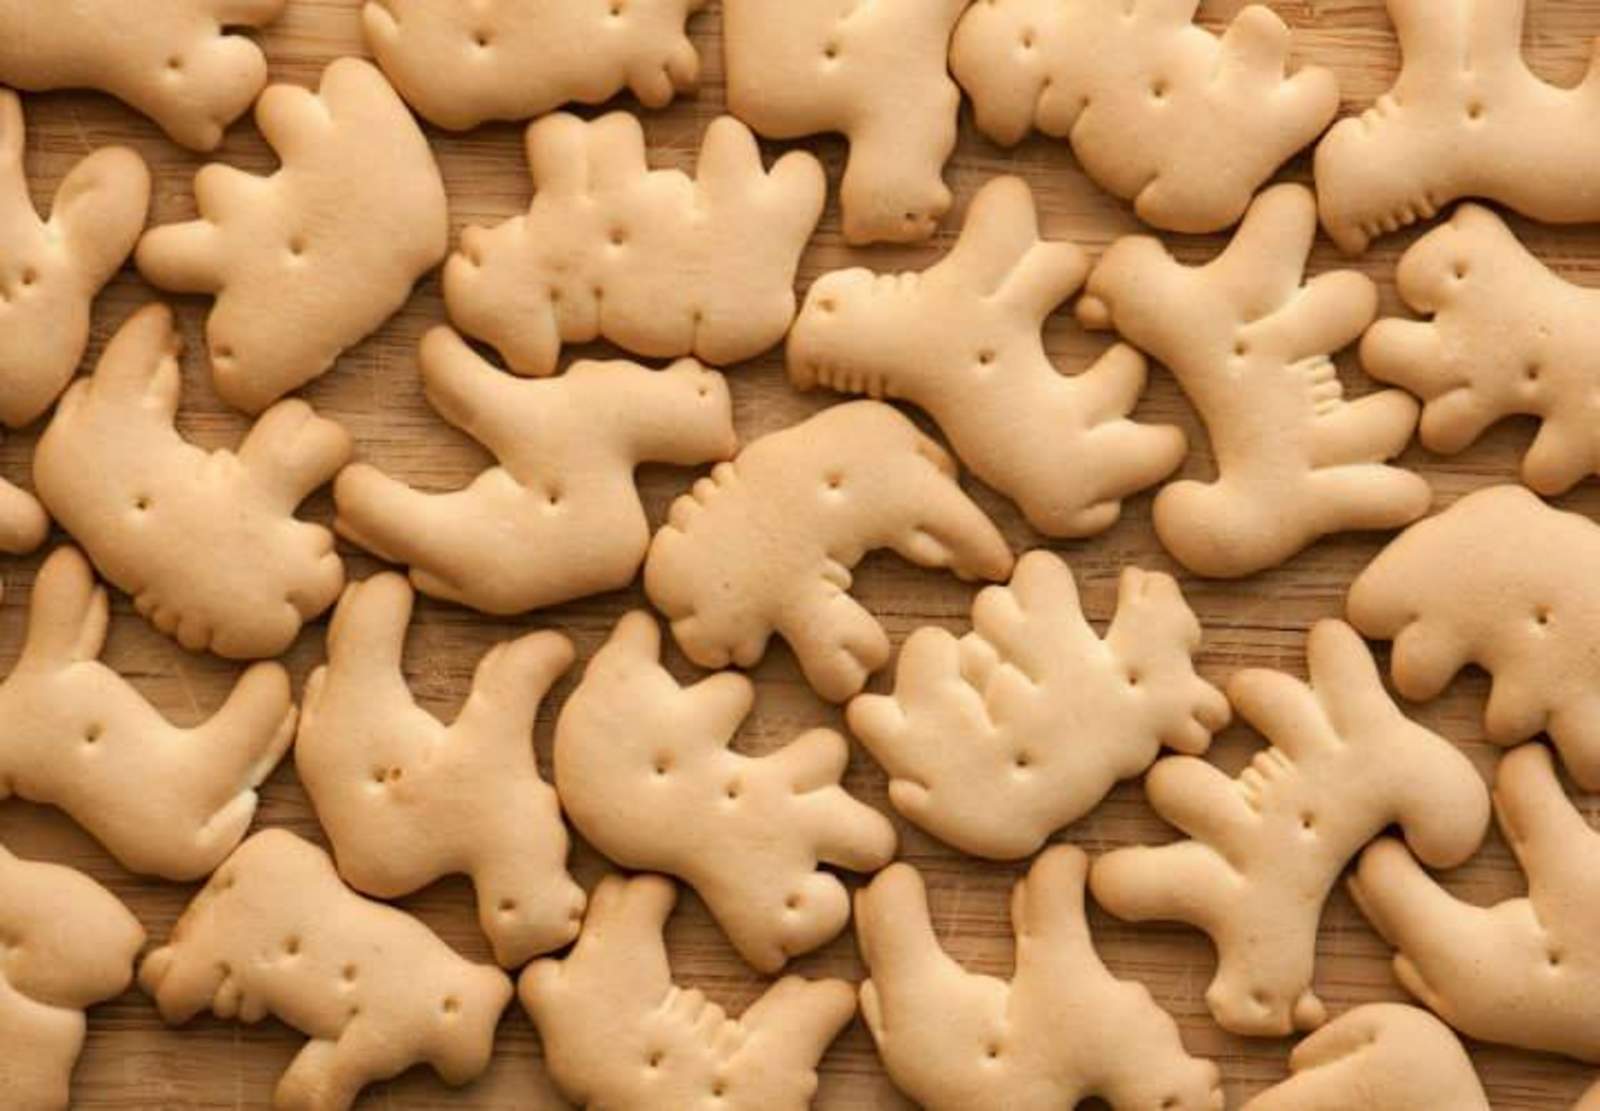 Dichas galletas en forma de jirafas, burros o perros, (aún no se logran distinguir), son ricas en magnesio y  vitaminas A, B, B12, C y D. (ESPECIAL)